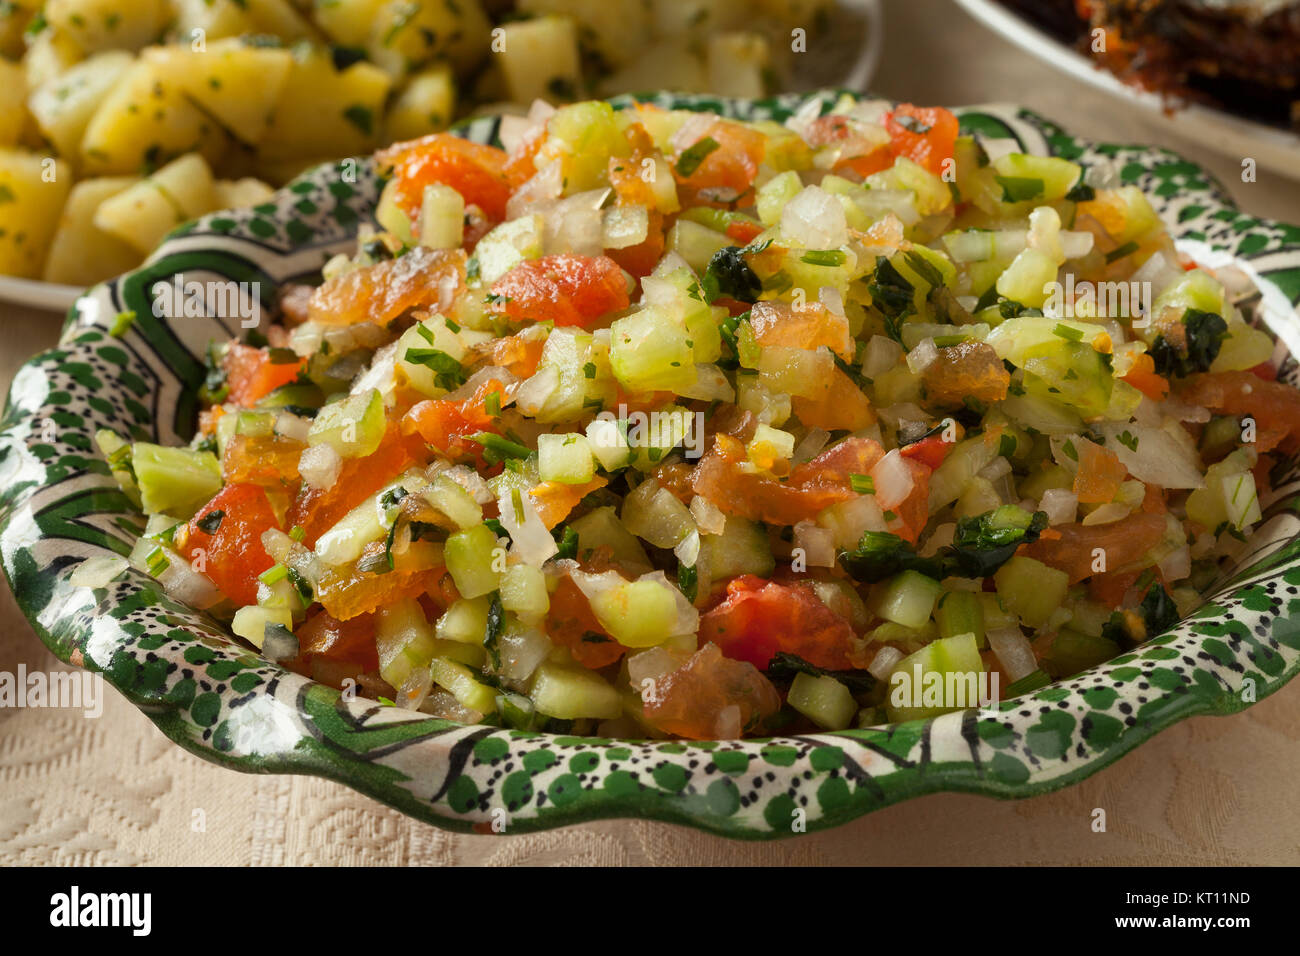 Marokkanisches Gericht mit frischen Salat aus einer Vielzahl von Gemüse Nahaufnahme Stockfoto